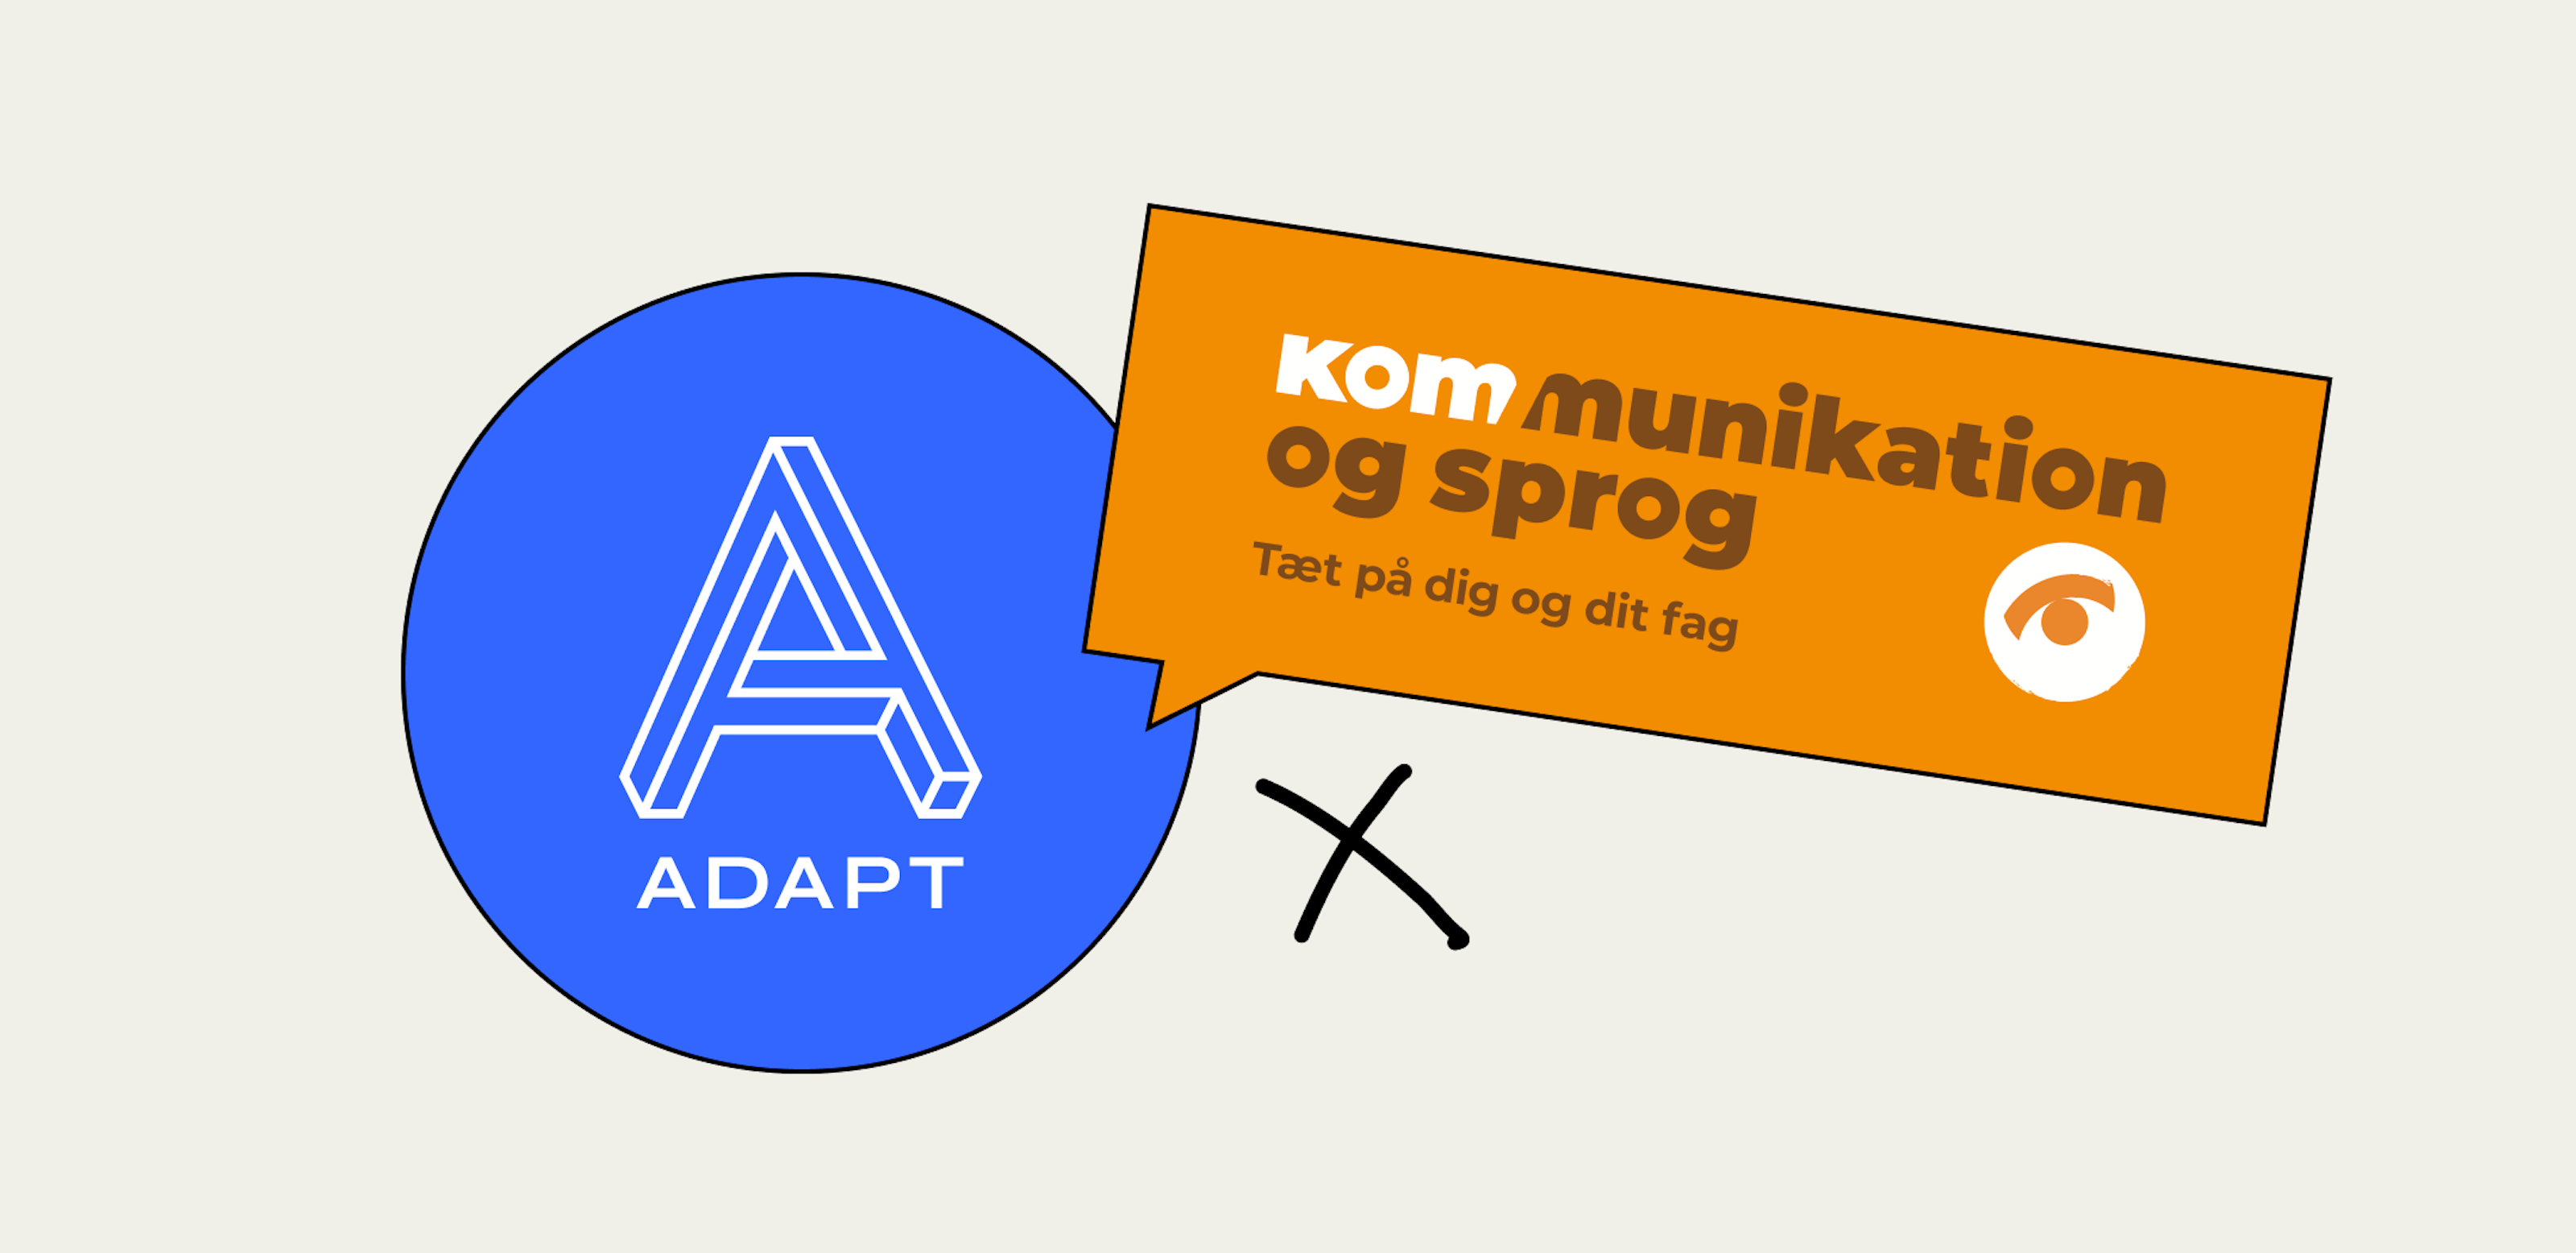 Adapt and Kommunikation og Sprog partner up for website project featured image